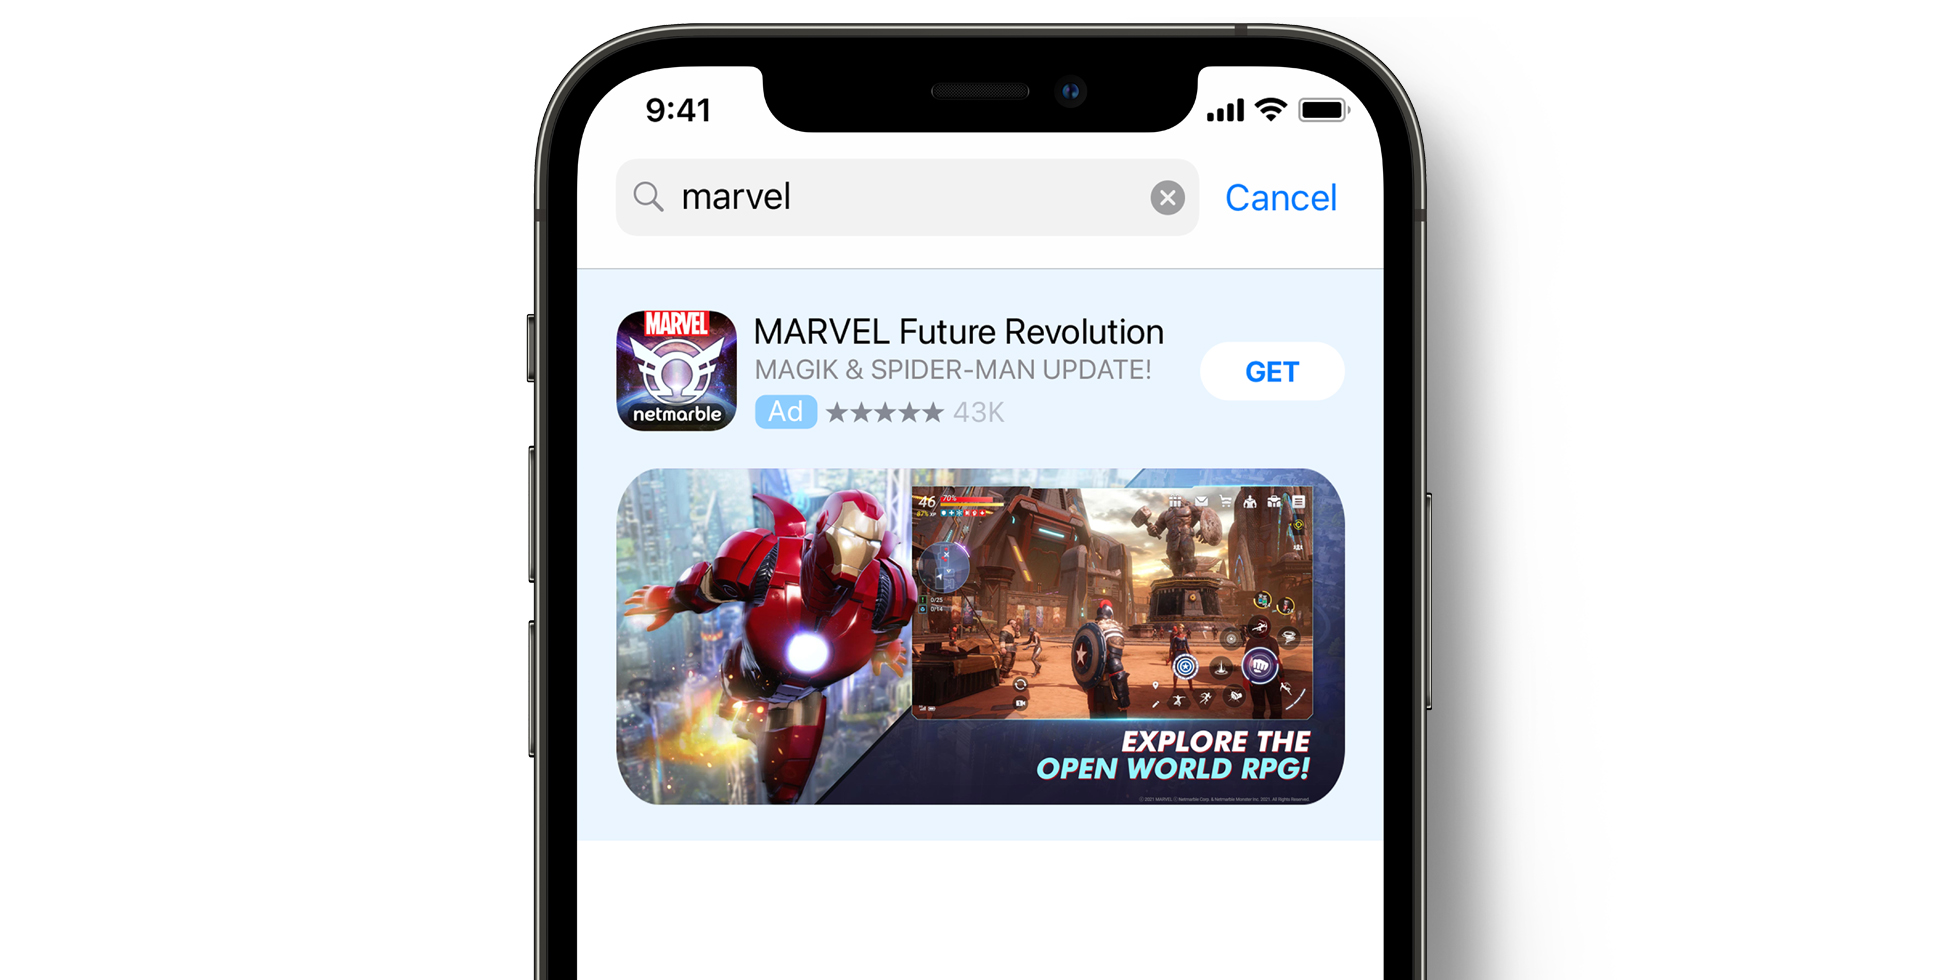 App Store 中的 MARVEL Future Revolution 广告